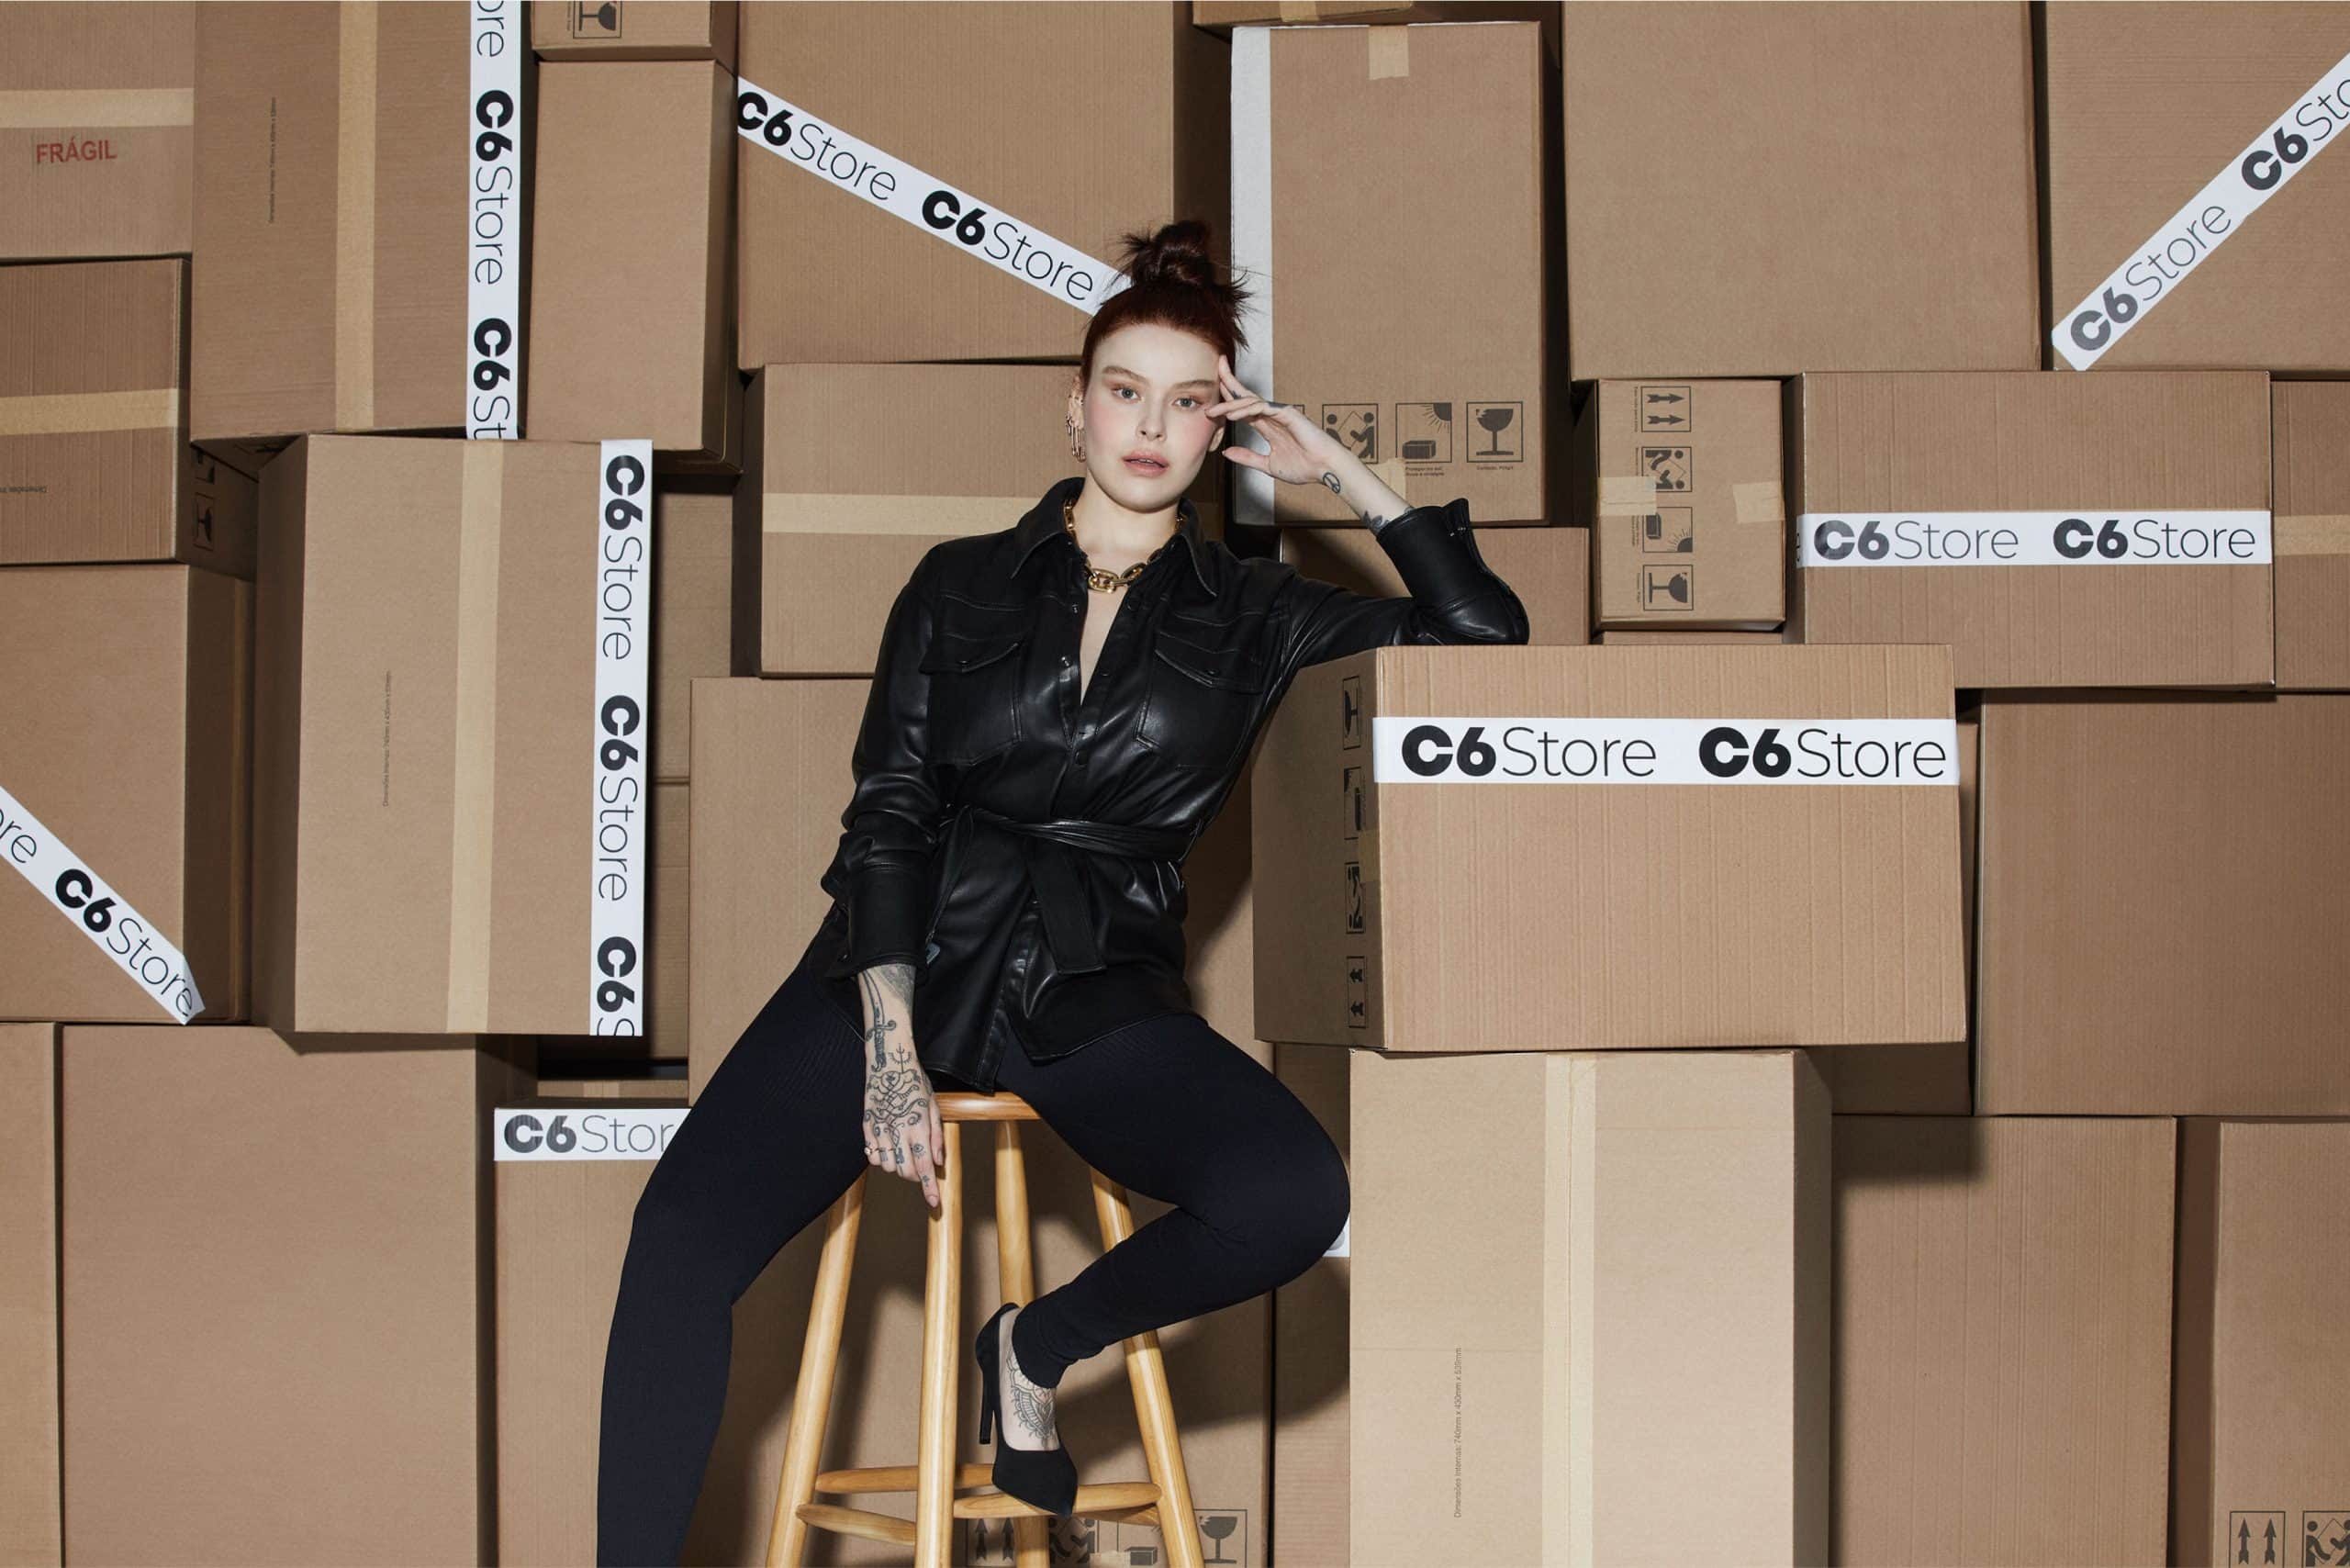 Mulher sentada ao lado de caixas com o logo do C6 Store